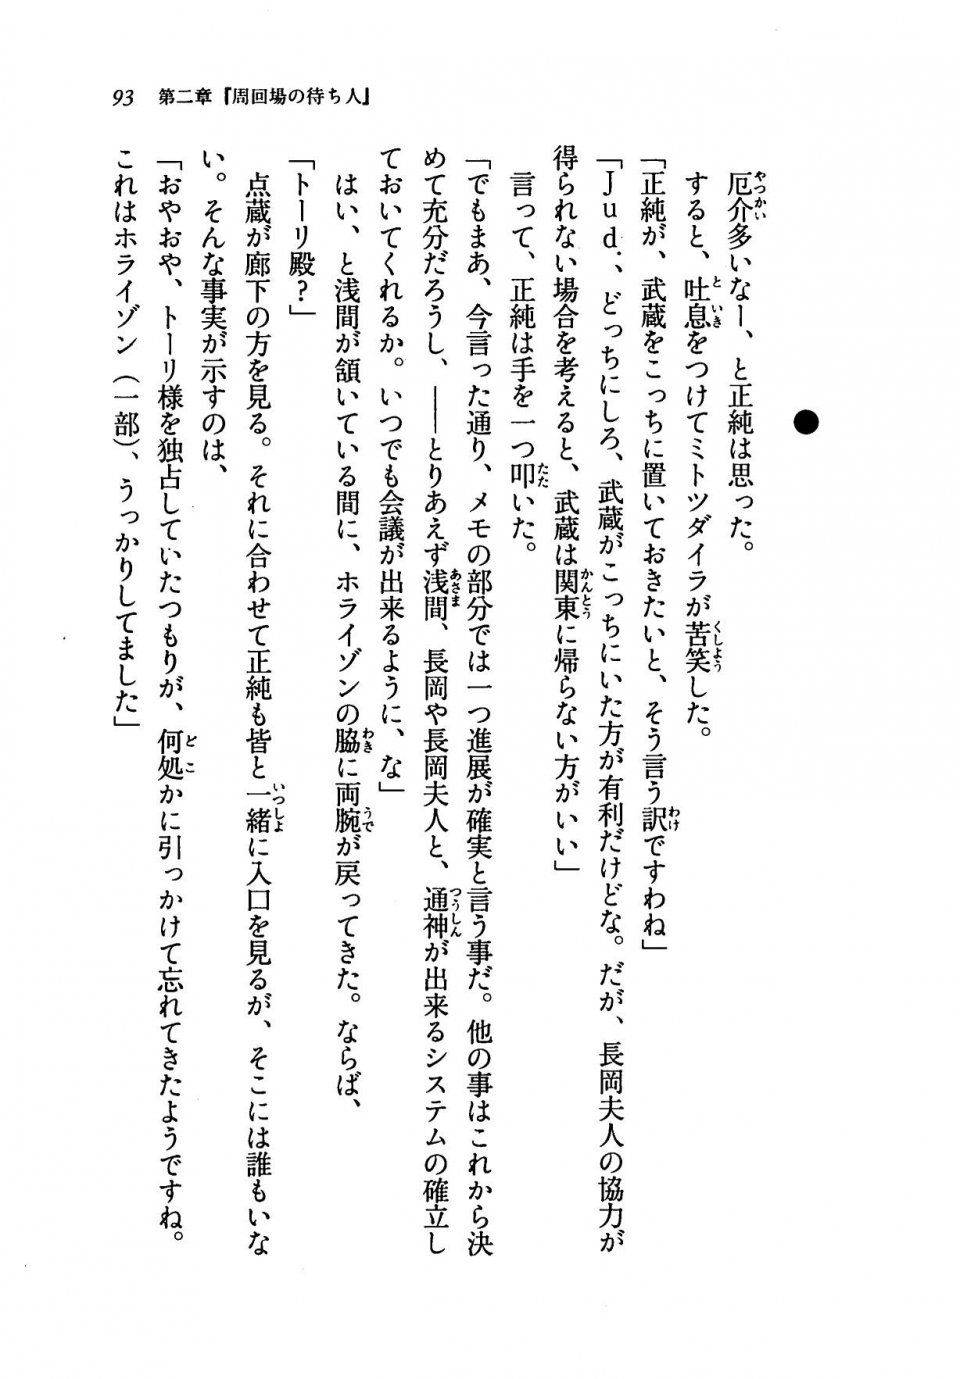 Kyoukai Senjou no Horizon LN Vol 19(8A) - Photo #93